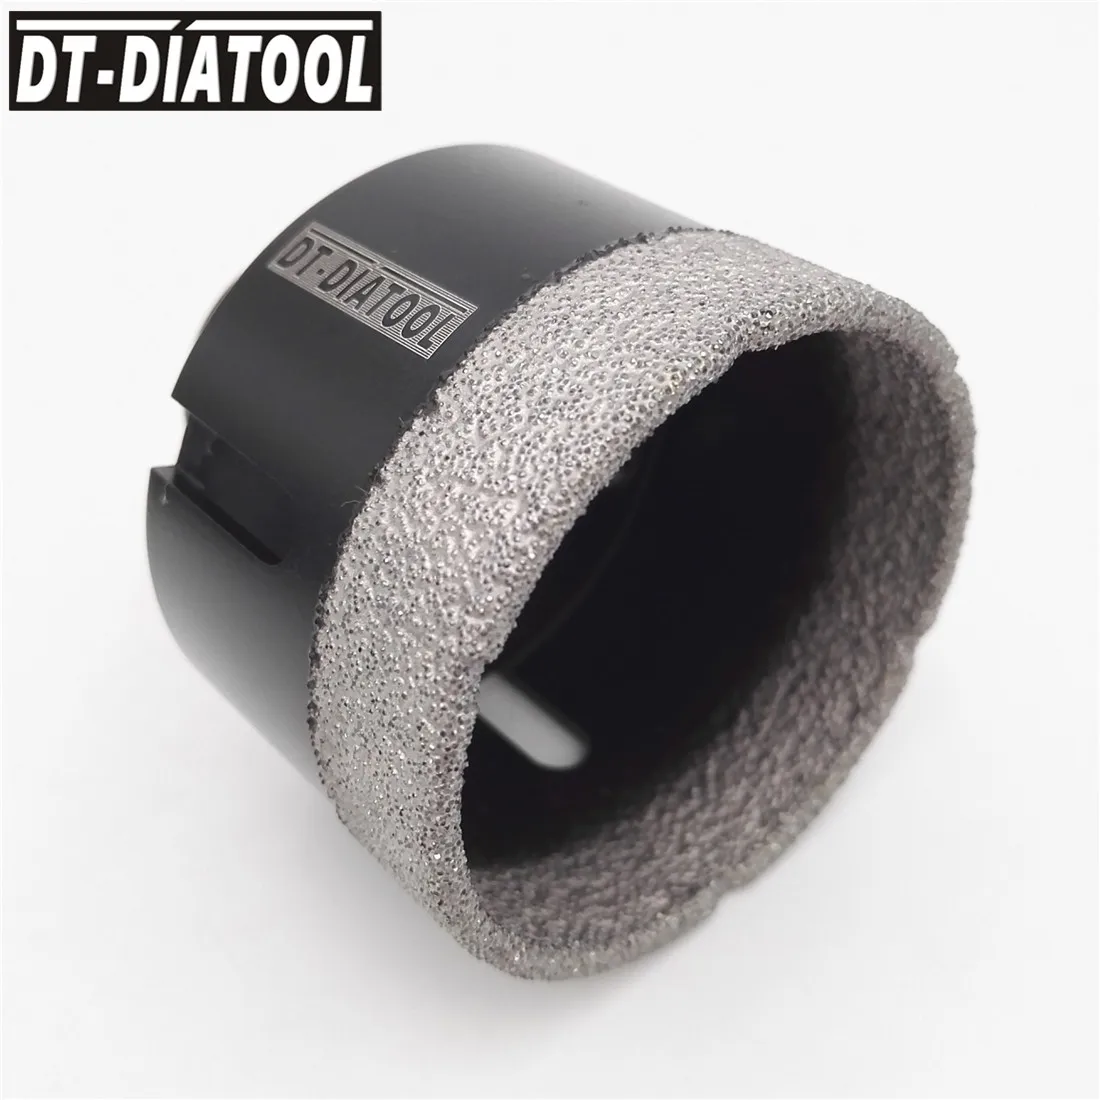 DT-DIATOOL диаметр 60 мм профессиональный сухой вакуумной пайки Алмазные сверла коронки для гранита мрамора плитка отверстие пилы с резьбой M14 от AliExpress RU&CIS NEW